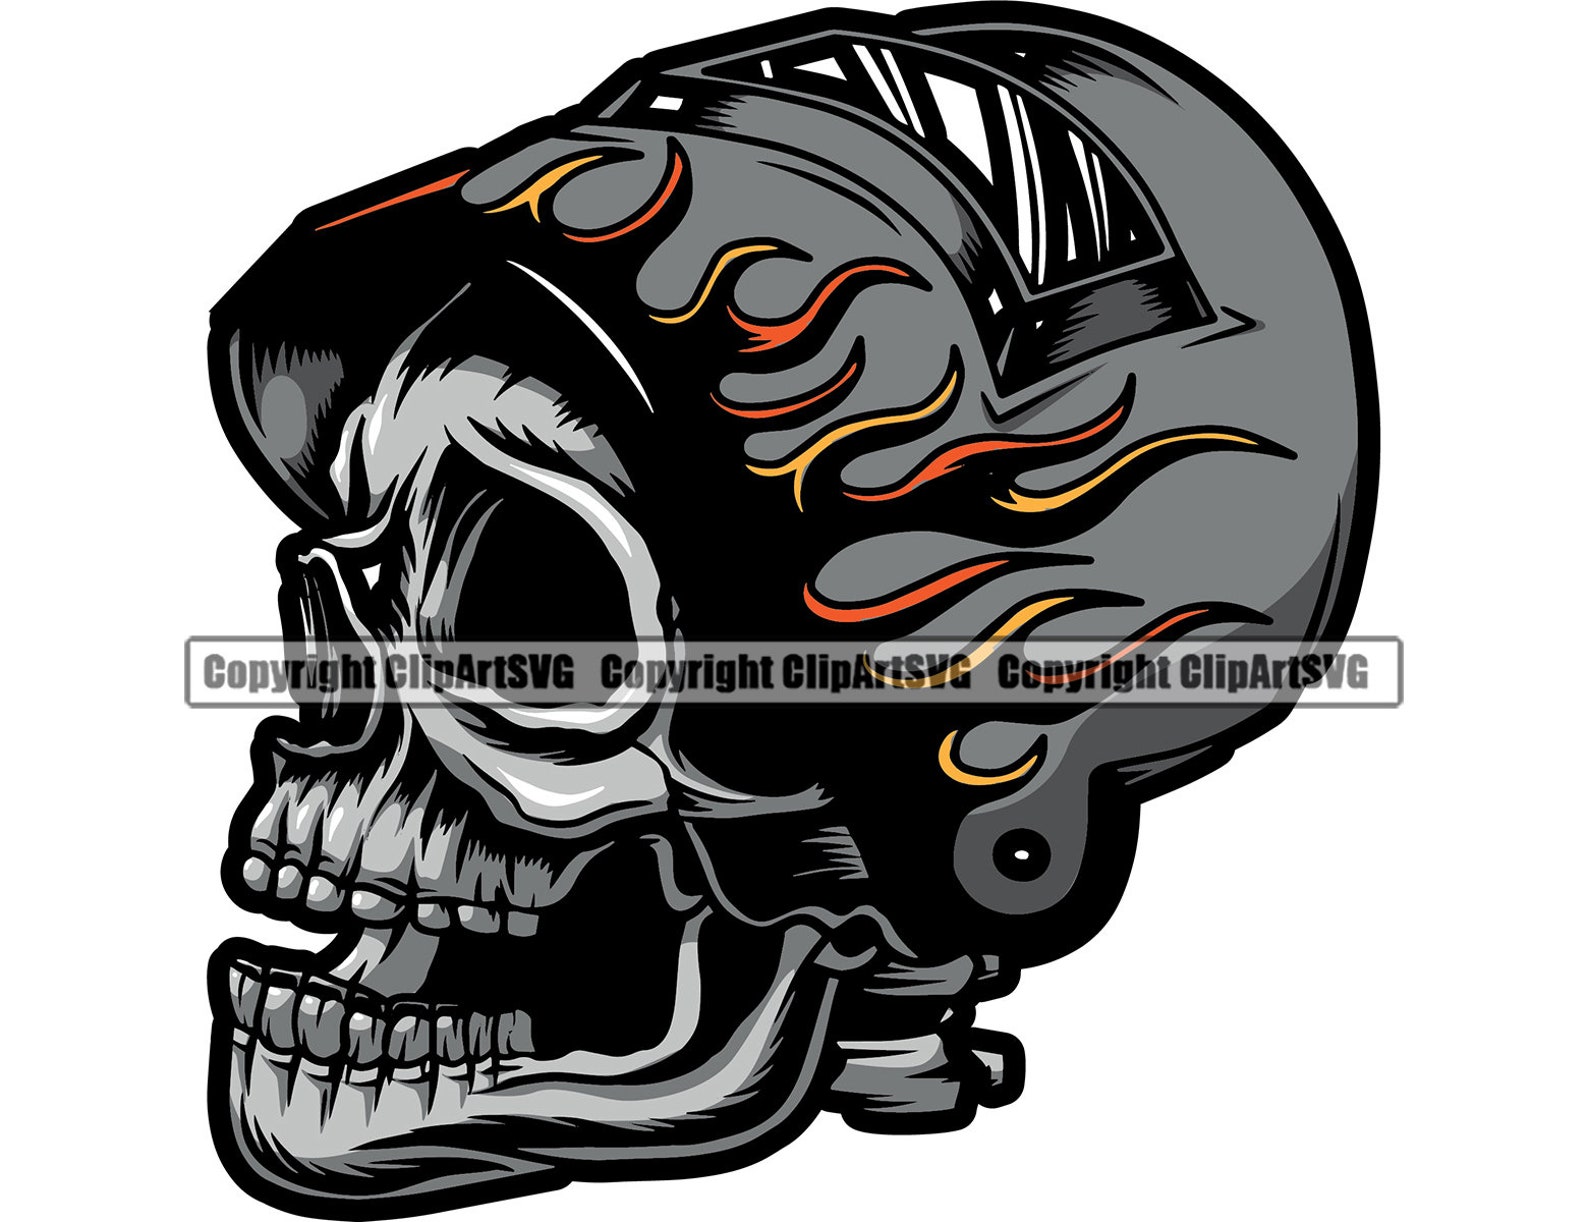 Welder Welding Skull Steel Metal Torch Fire Flames Safety Mask - Etsy